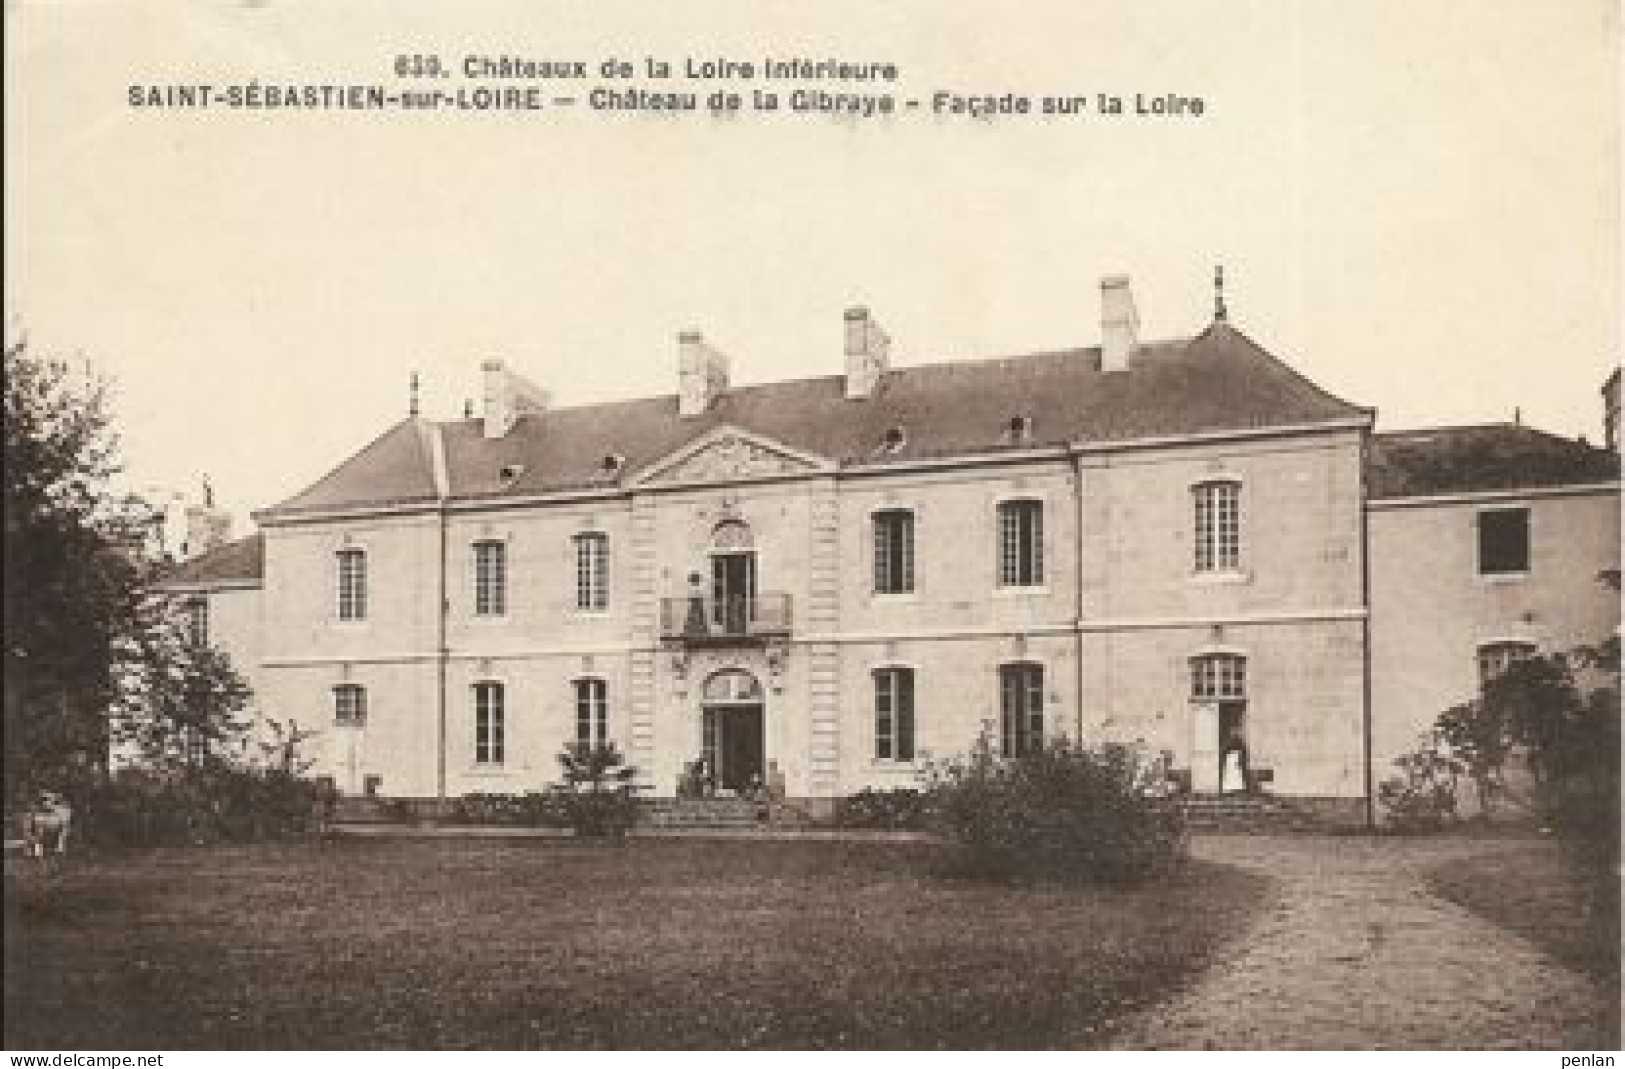 SAINT-SEBASTIEN-sur-LOIRE - Château De La Gibraye - Façade Sur La Loire - Saint-Sébastien-sur-Loire